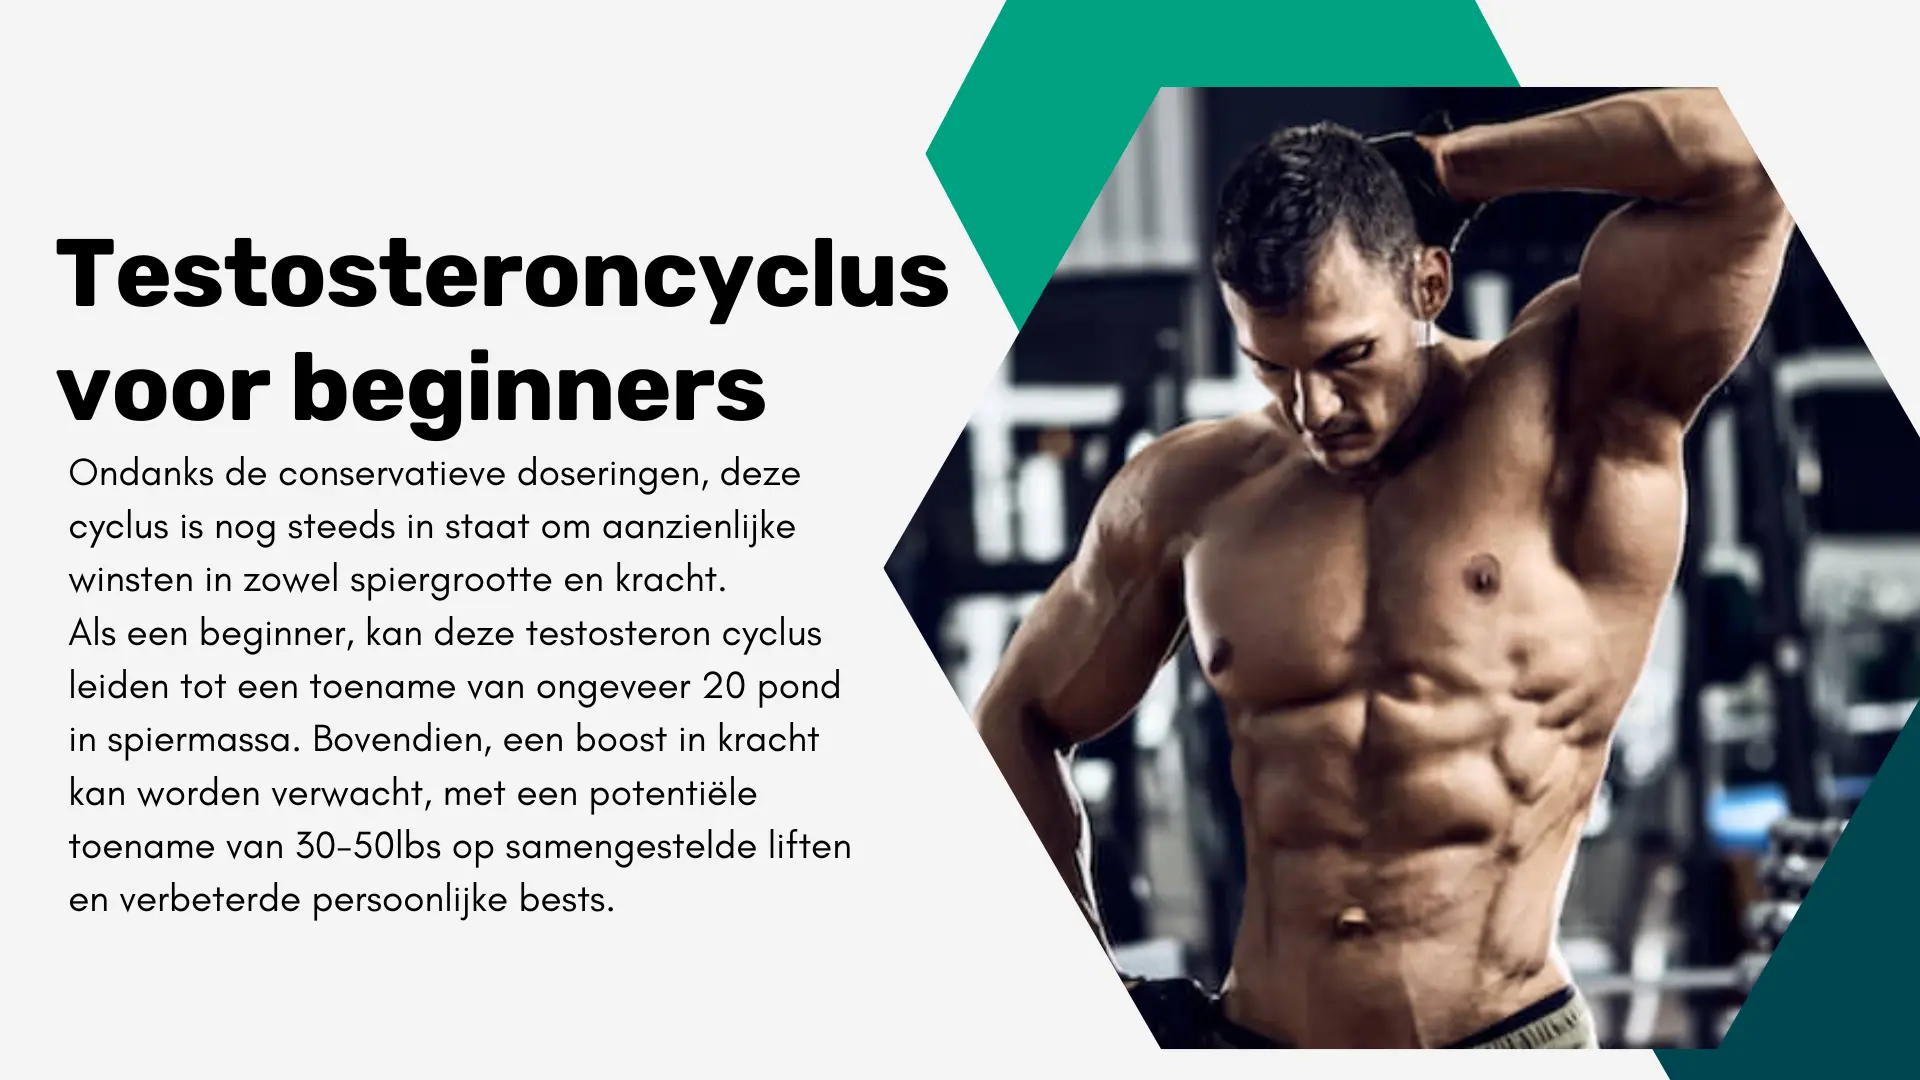 Testosteroncyclus voor beginners